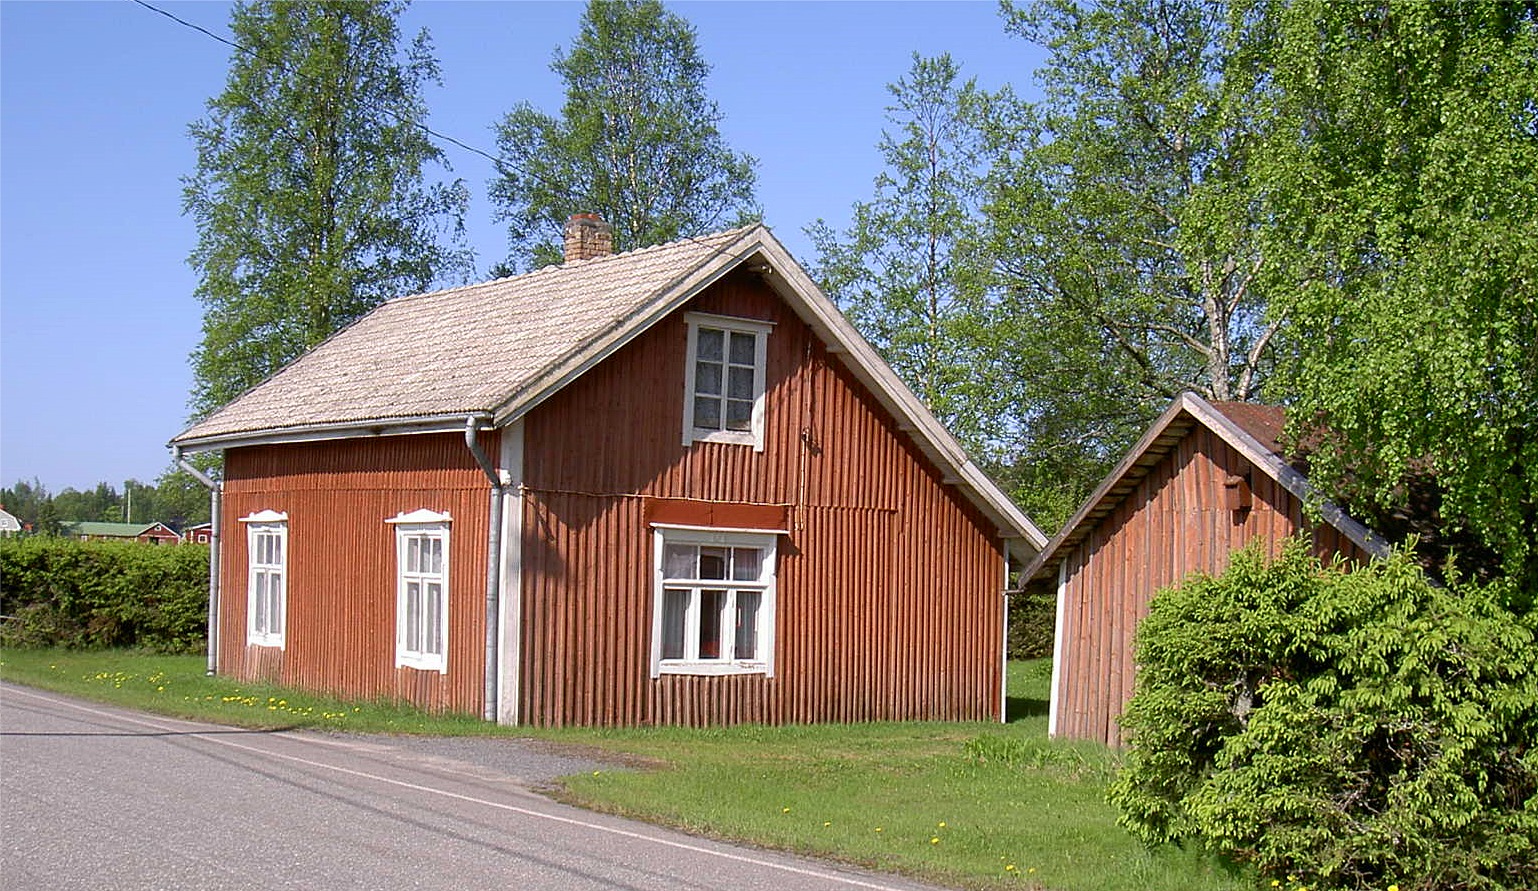 Nils Klemets föräldrahem "Skräddarinas" låg nära Åbackvägen. Nils var son till skräddaren Johannes Klemets (1889-1944) och Matilda (f. Björklund 1892-1975).